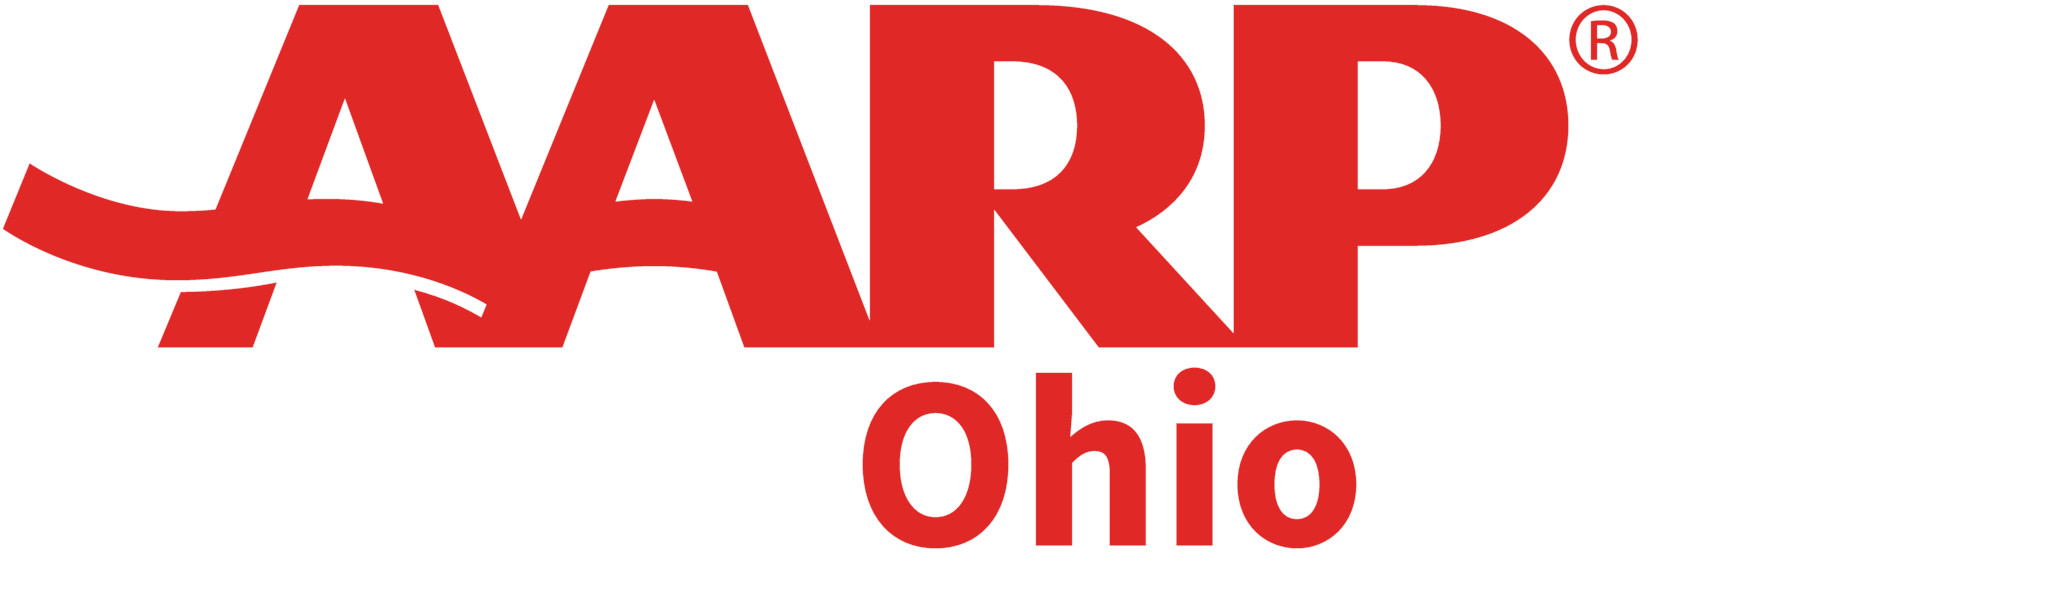 AARP Ohio logo